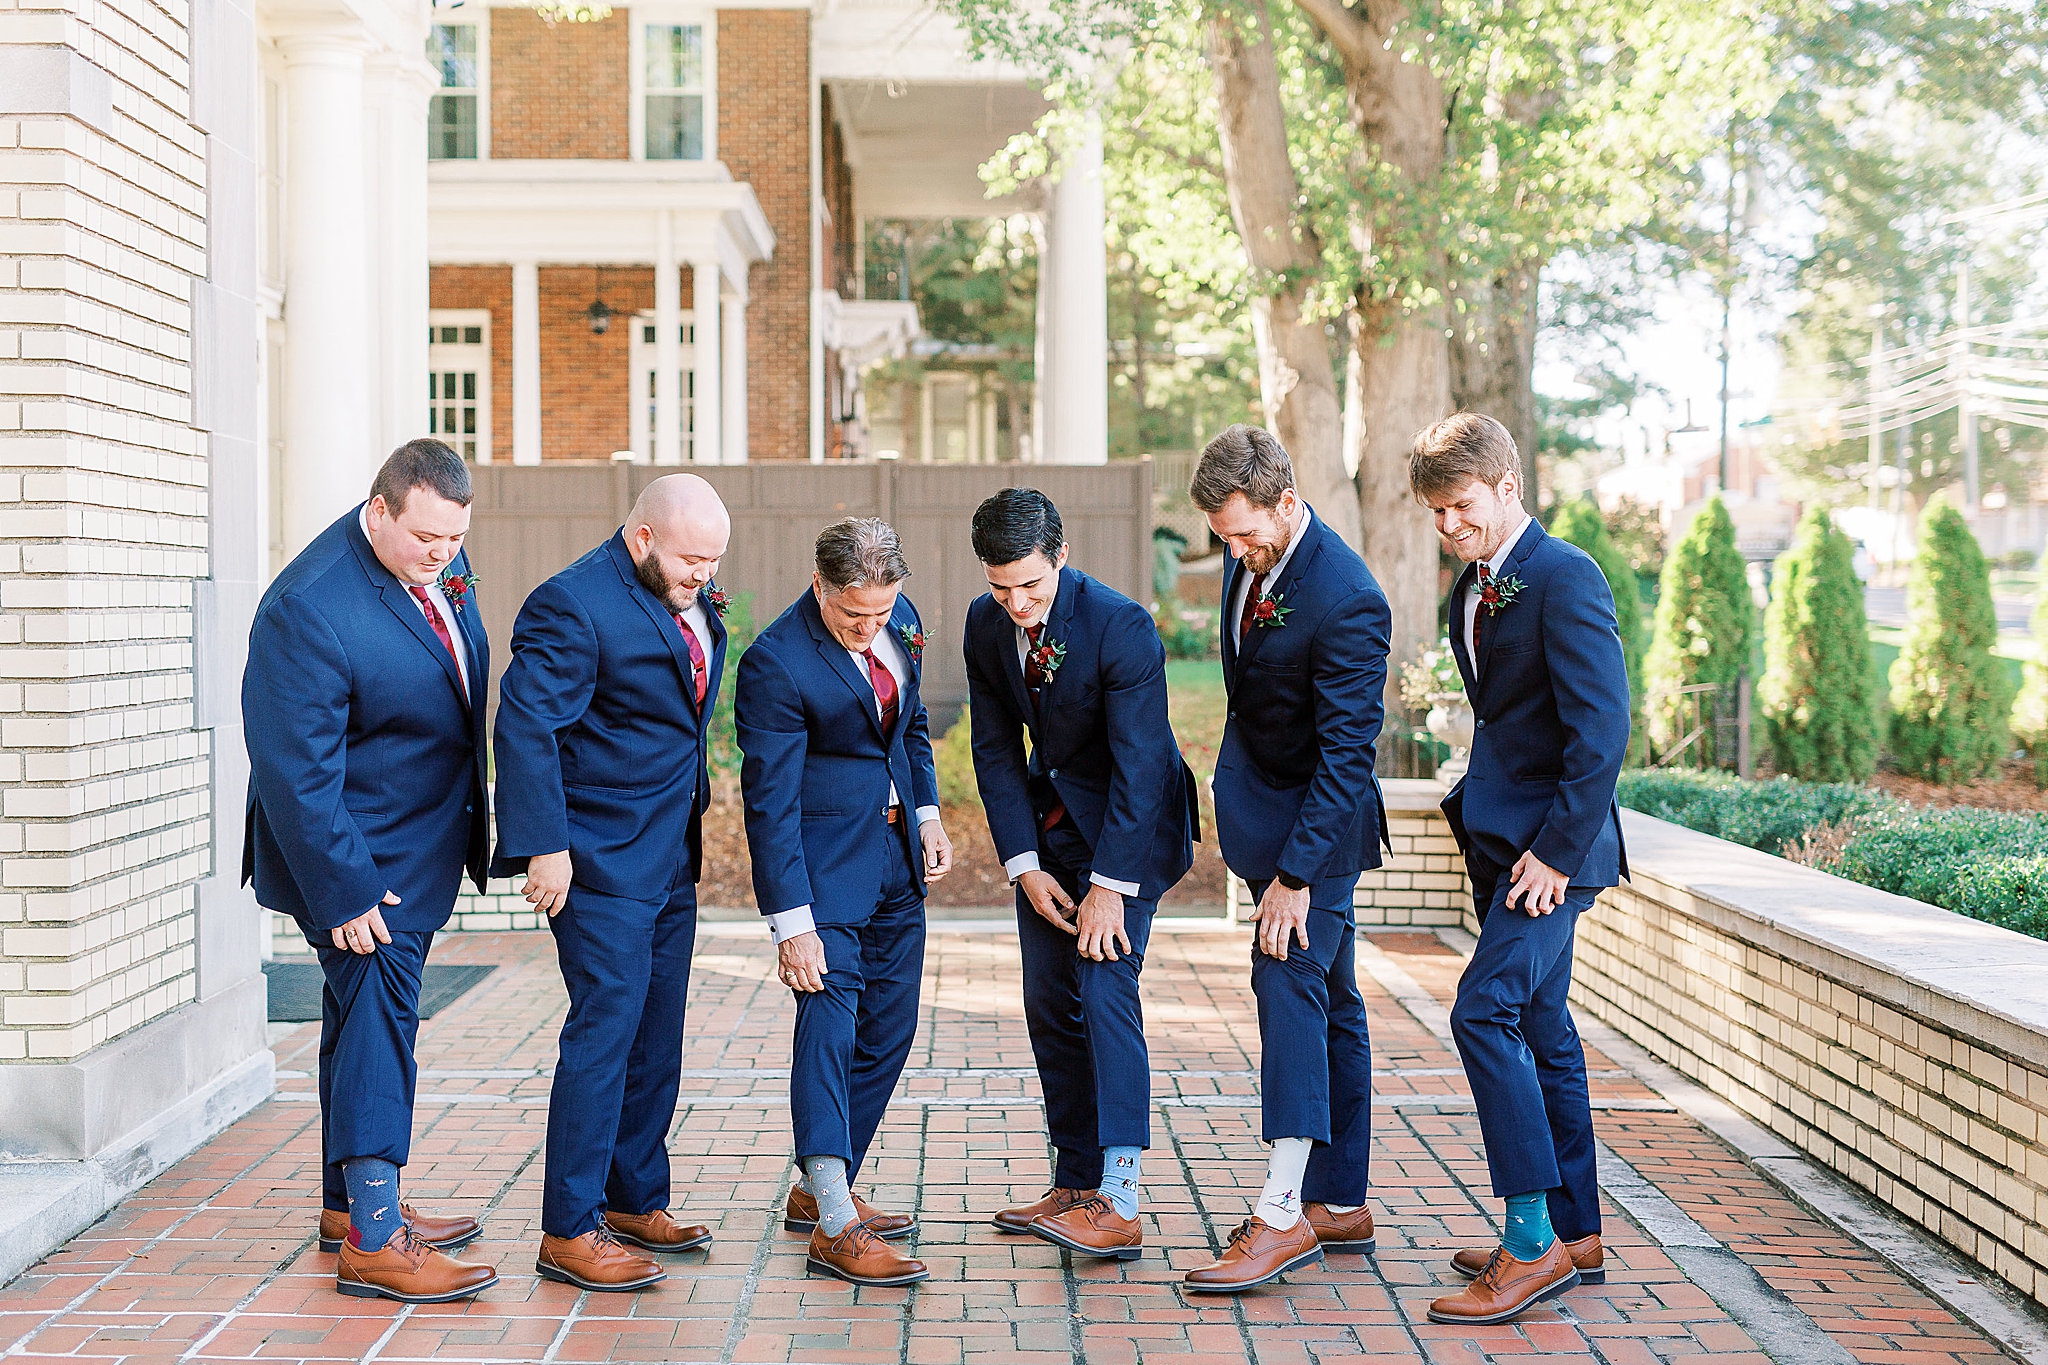 groomsmen show off custom socks